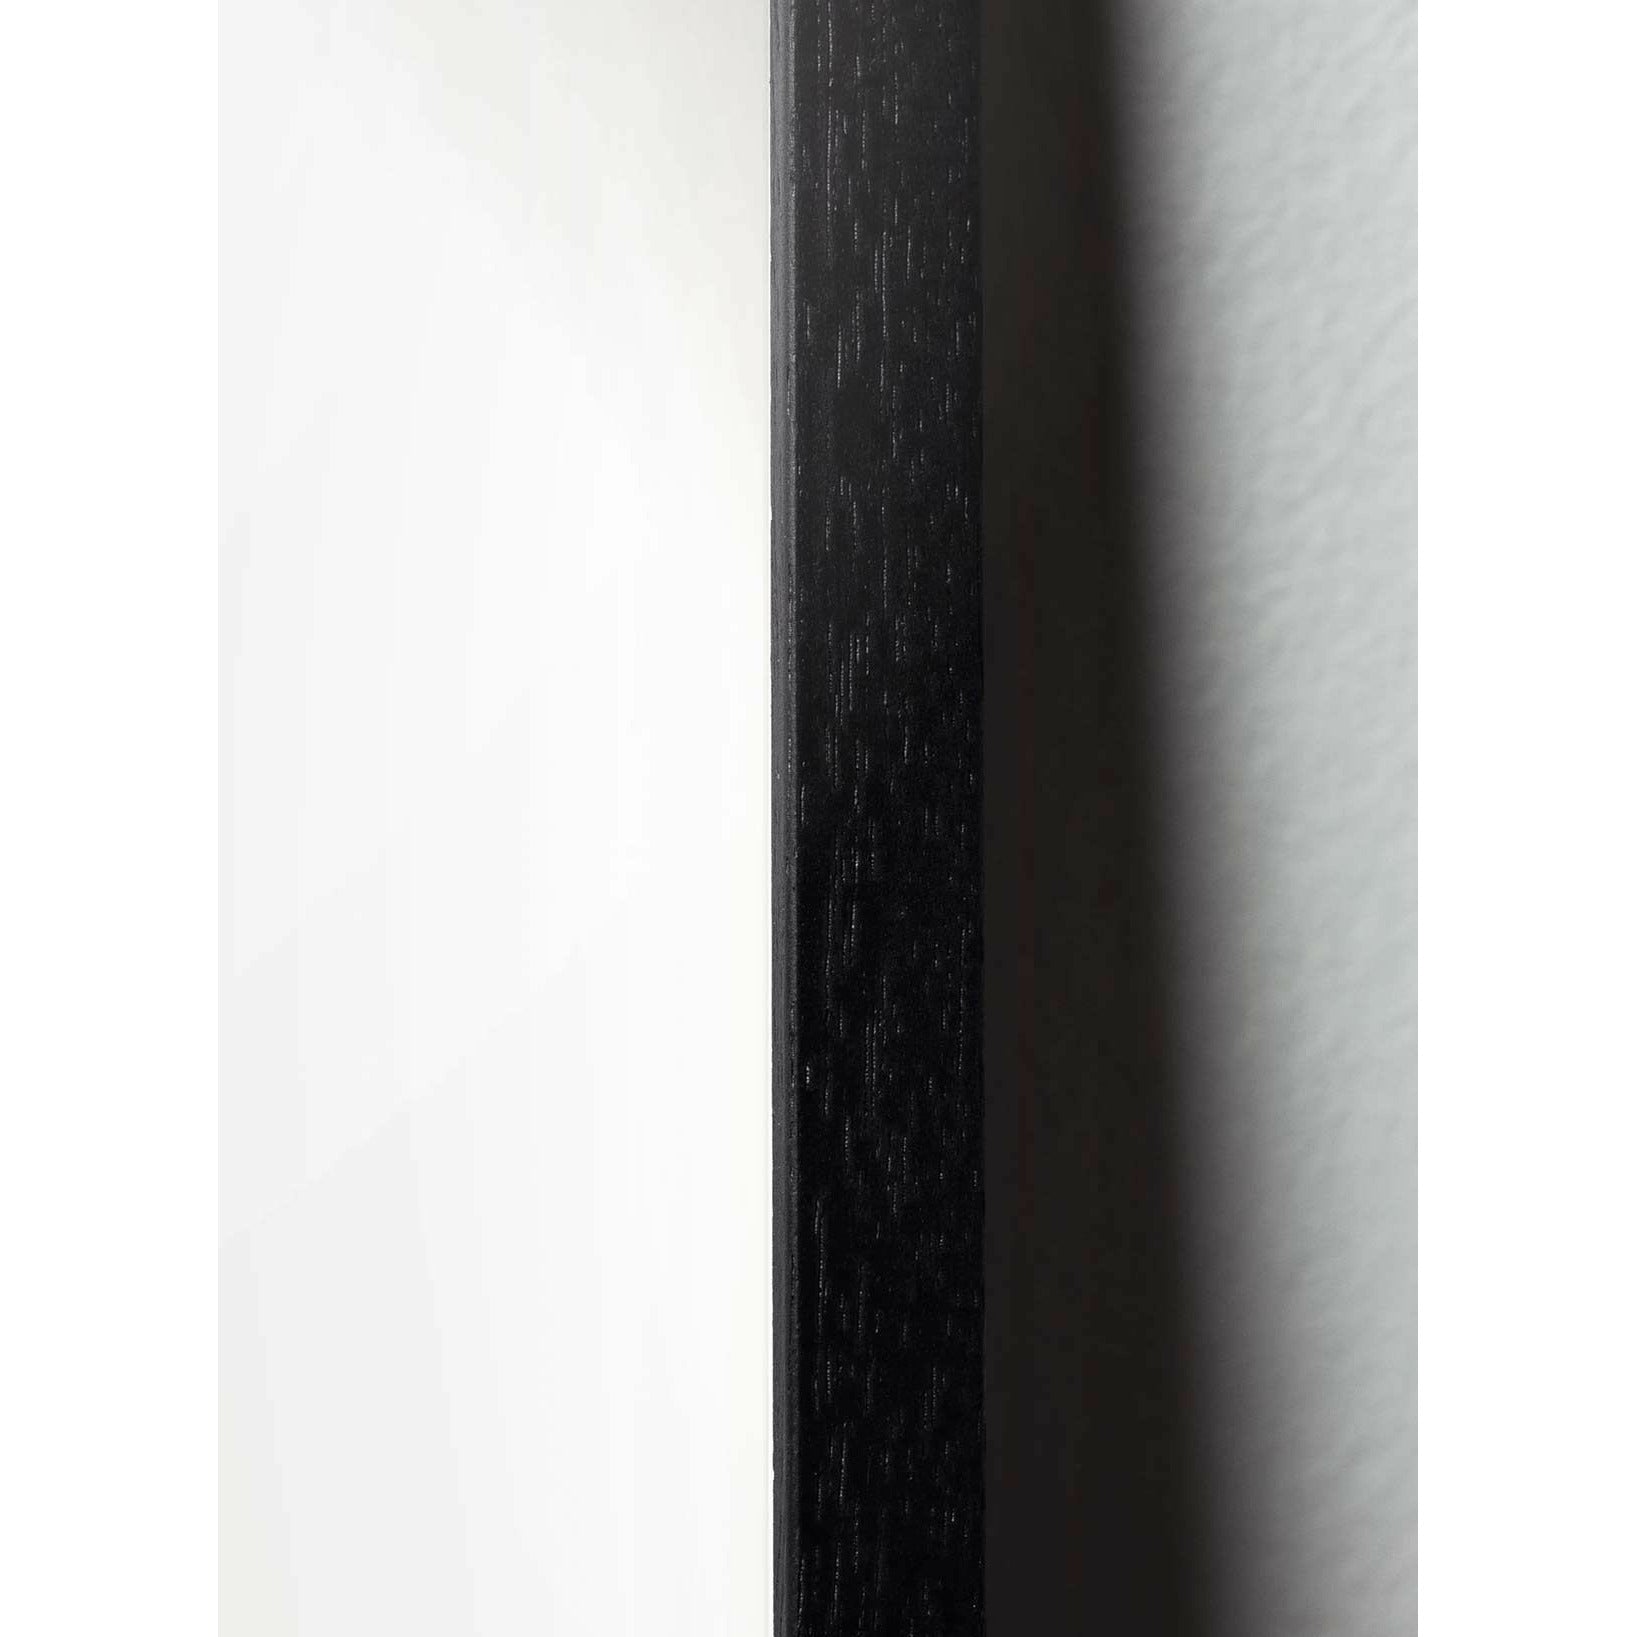 Plakát Ant Line Brainchild, rám v černém lakovaném dřevu 70x100 cm, bílé pozadí